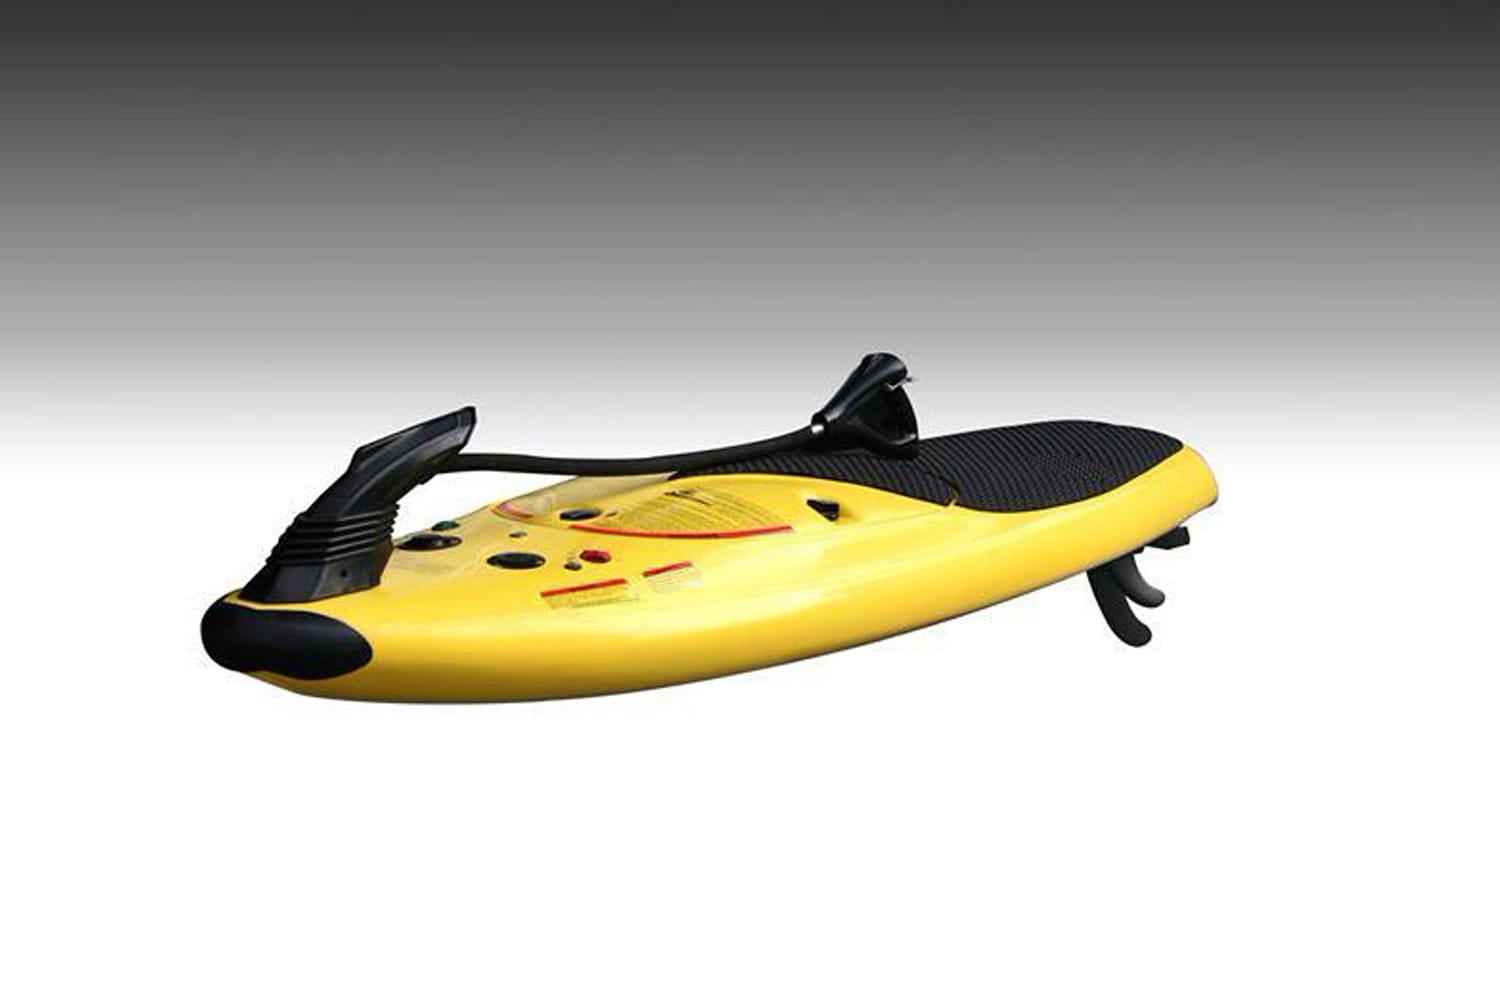 Für das 54 PS starke Surfbrett brauchen Sie einen Jetski-Führerschein (um 7800 Euro bei Water Fun Company).